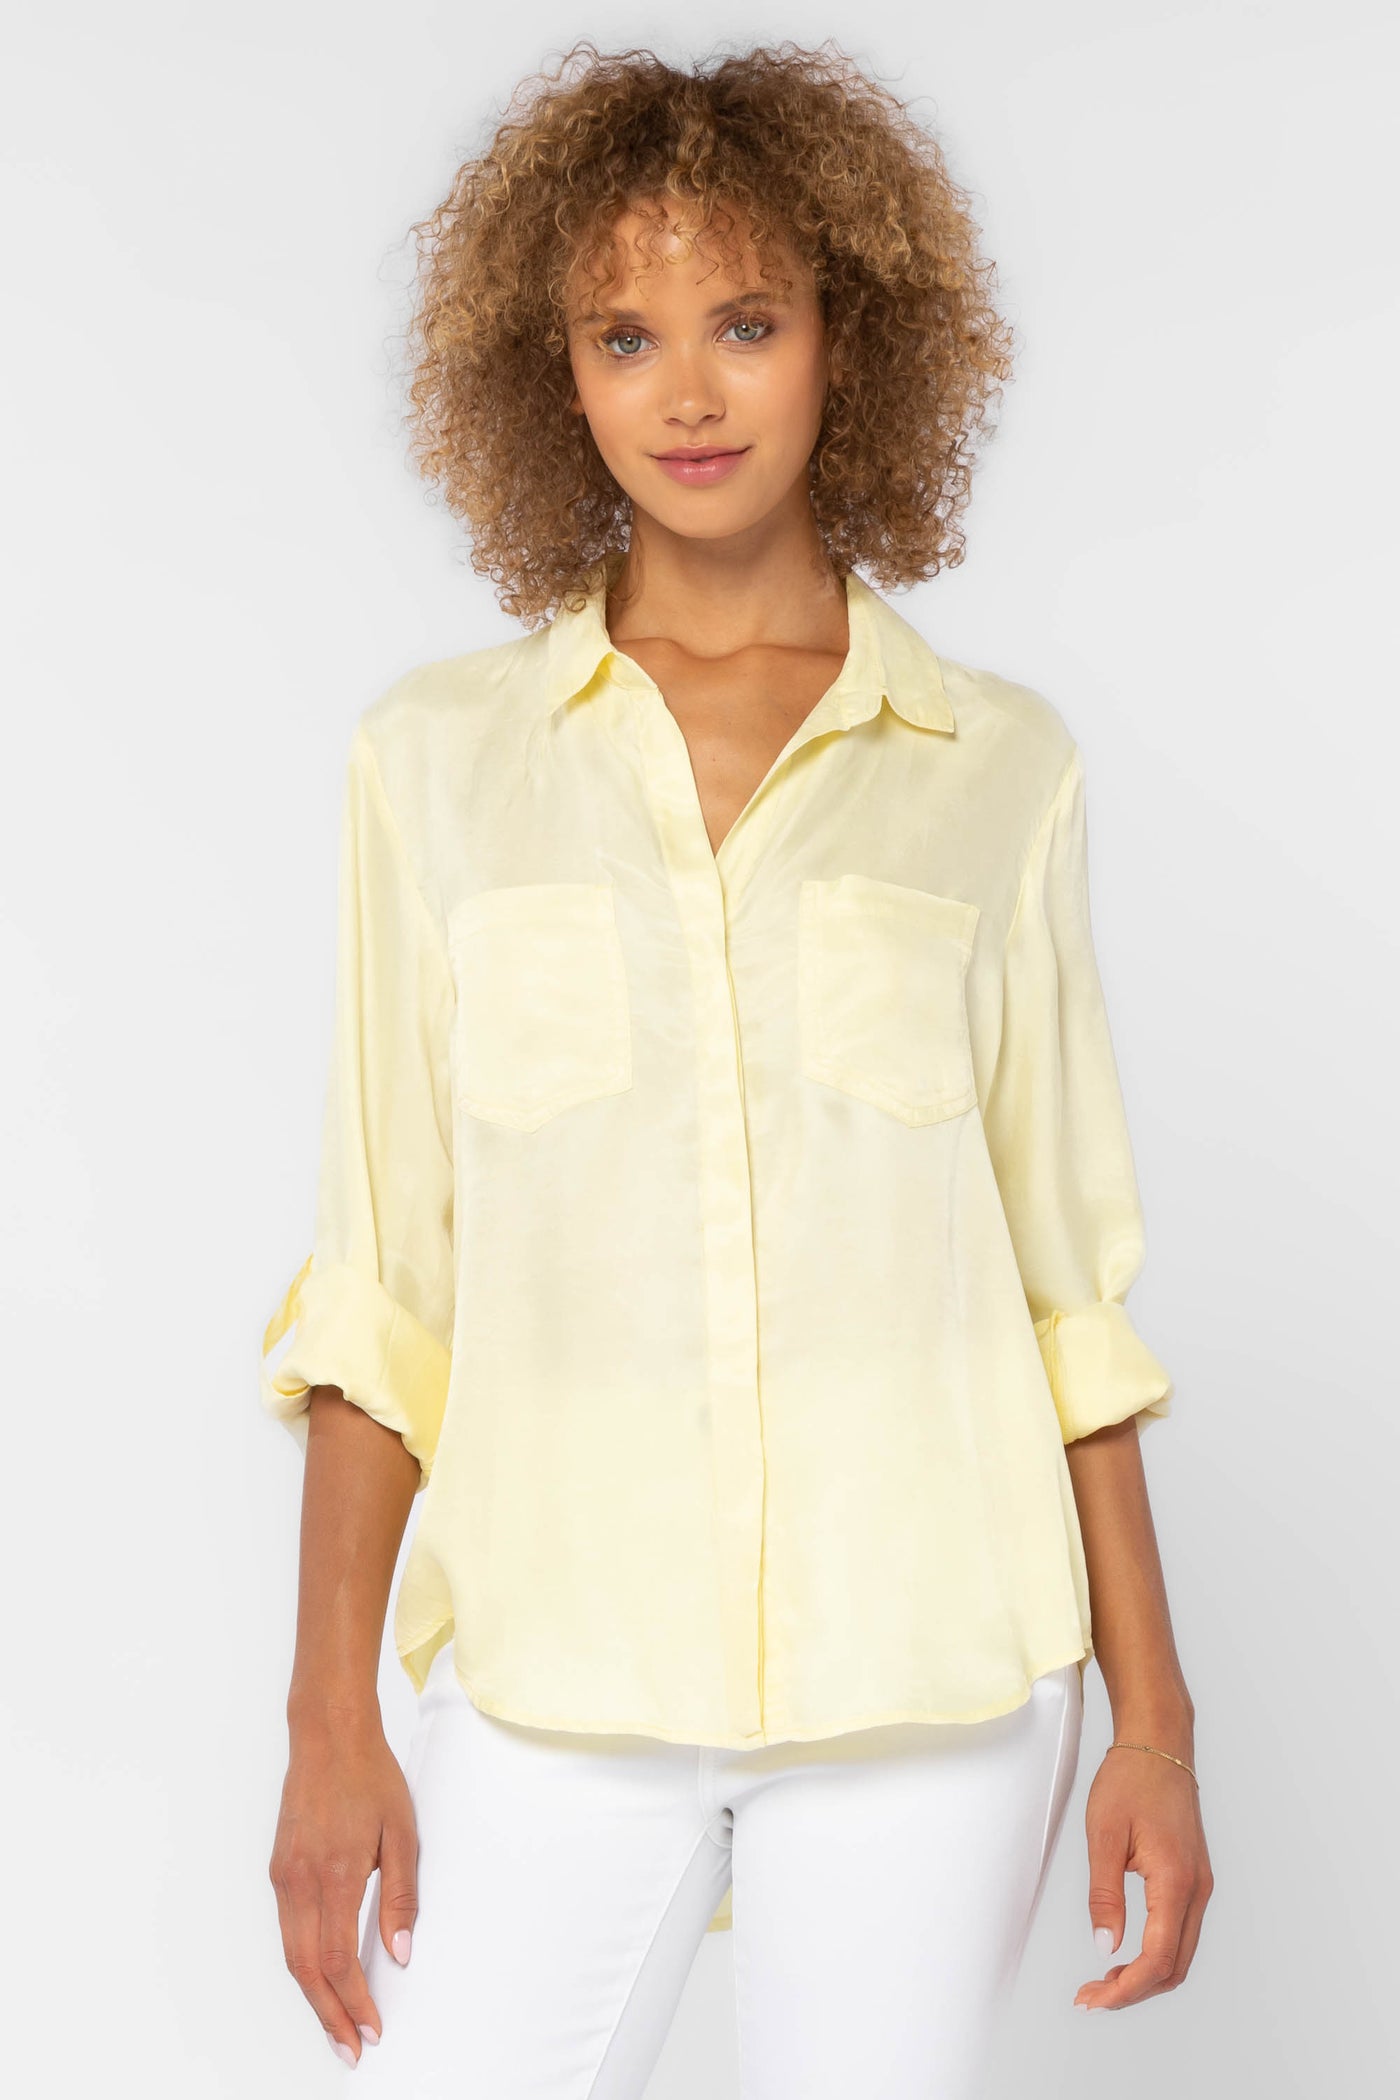 Riley Light Yellow Shirt - Tops - Velvet Heart Clothing